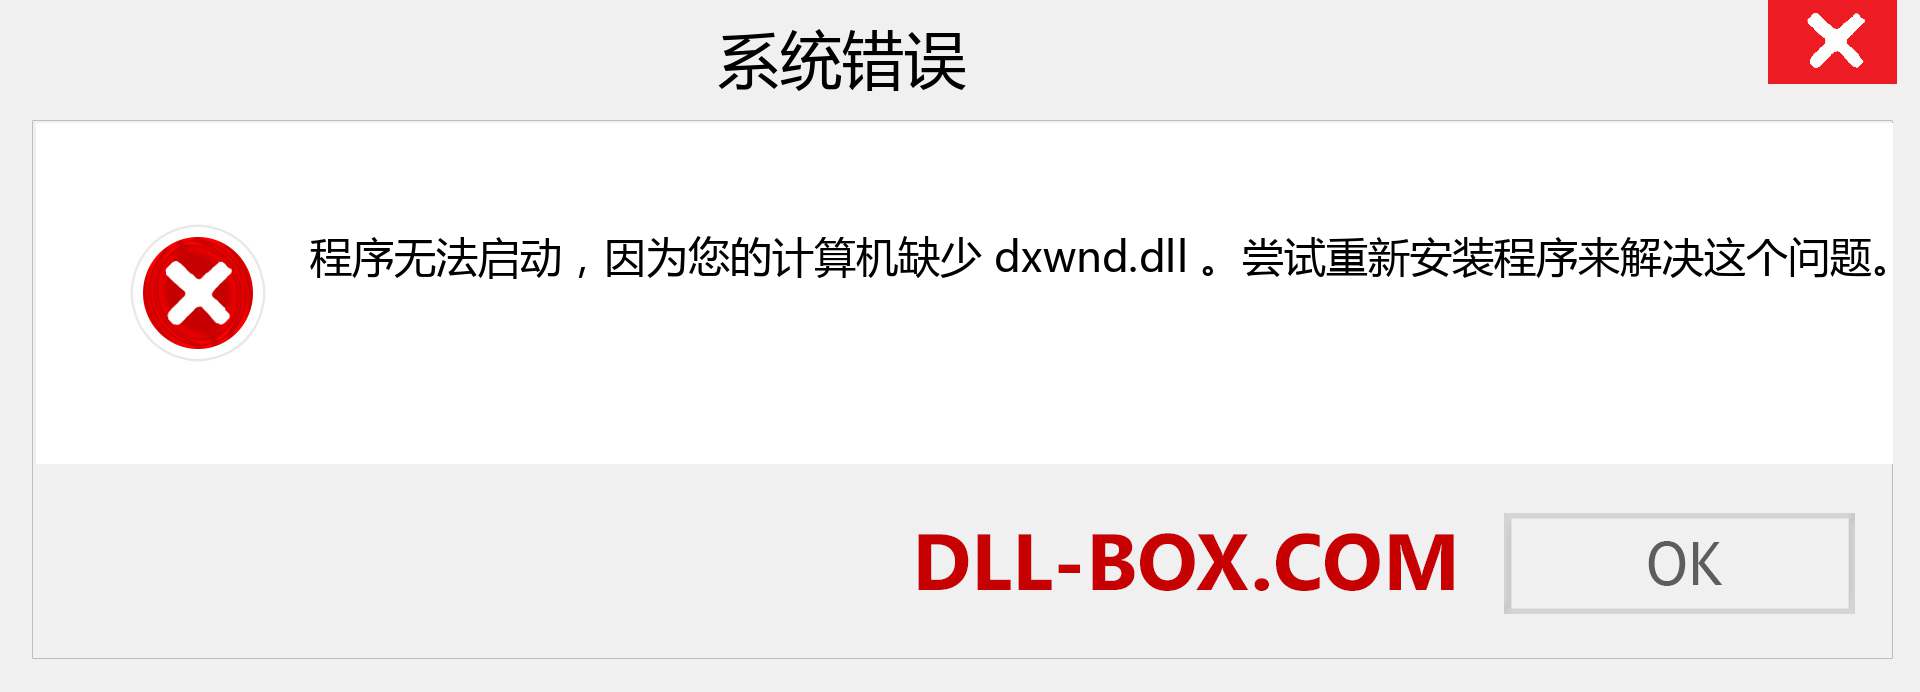 dxwnd.dll 文件丢失？。 适用于 Windows 7、8、10 的下载 - 修复 Windows、照片、图像上的 dxwnd dll 丢失错误